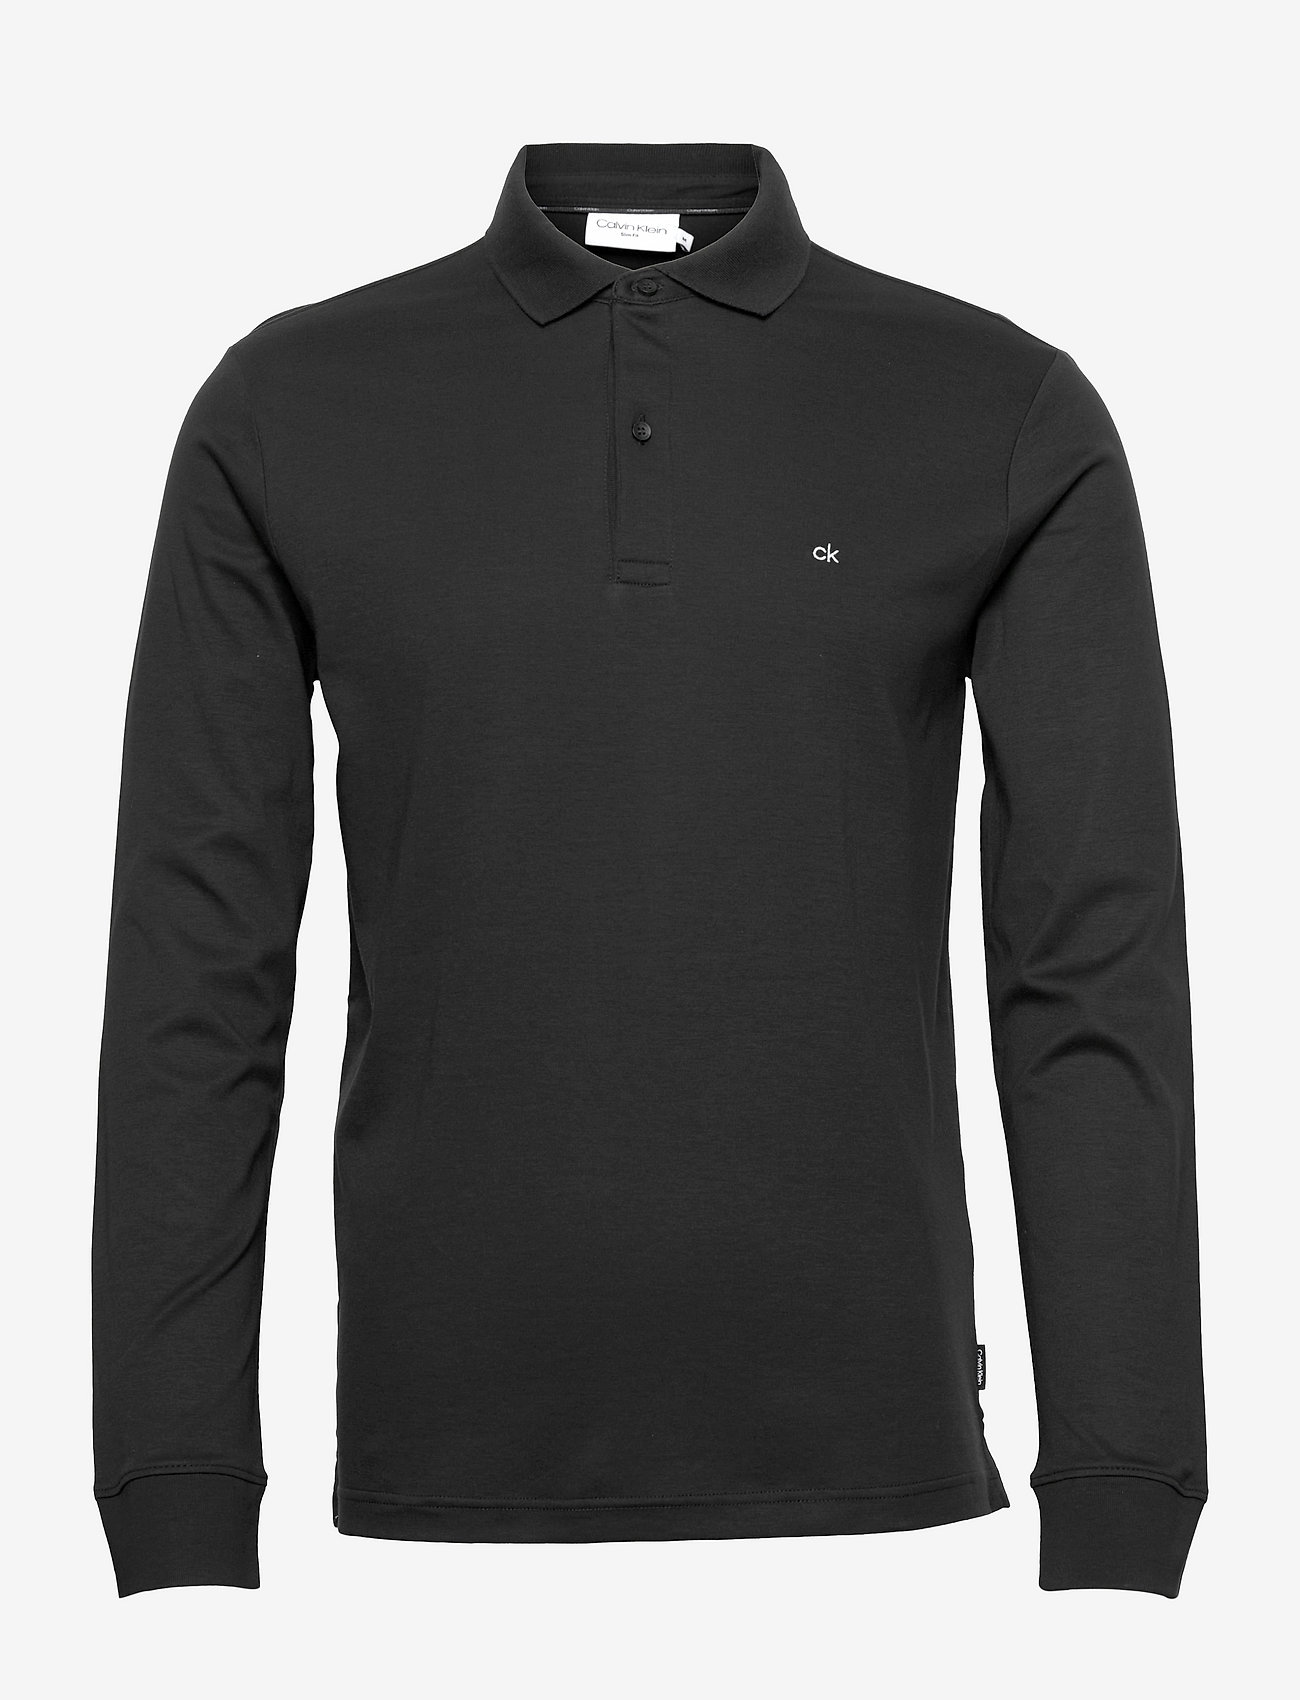 Calvin Klein, Liquid Touch Long Sleeve Polo Shirt, Black